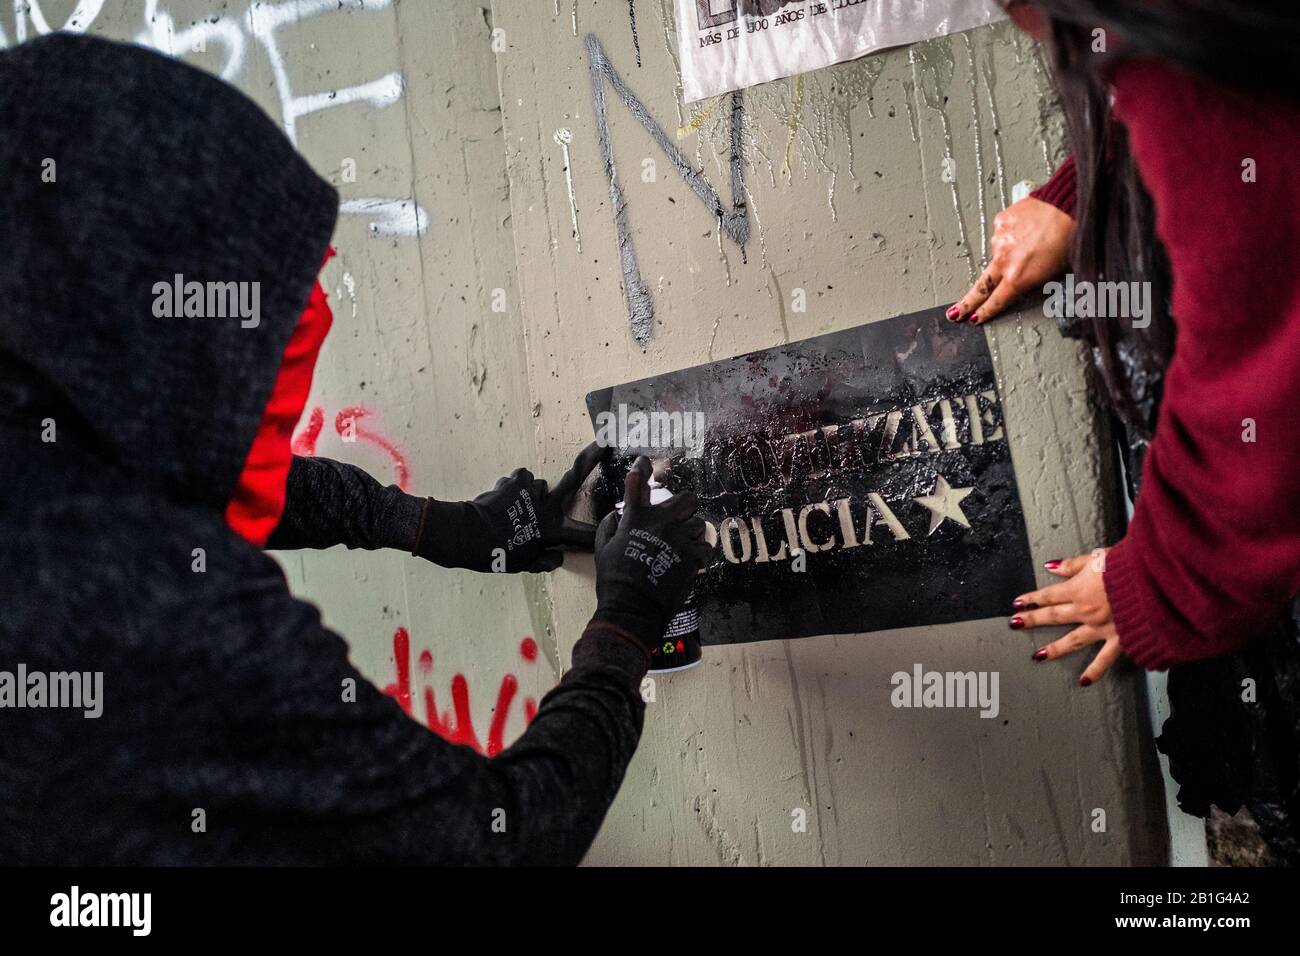 Uno spray studentesco radicale dipinge uno slogan politico sul muro durante una marcia di protesta contro le politiche del governo a Bogotá, Colombia. Foto Stock